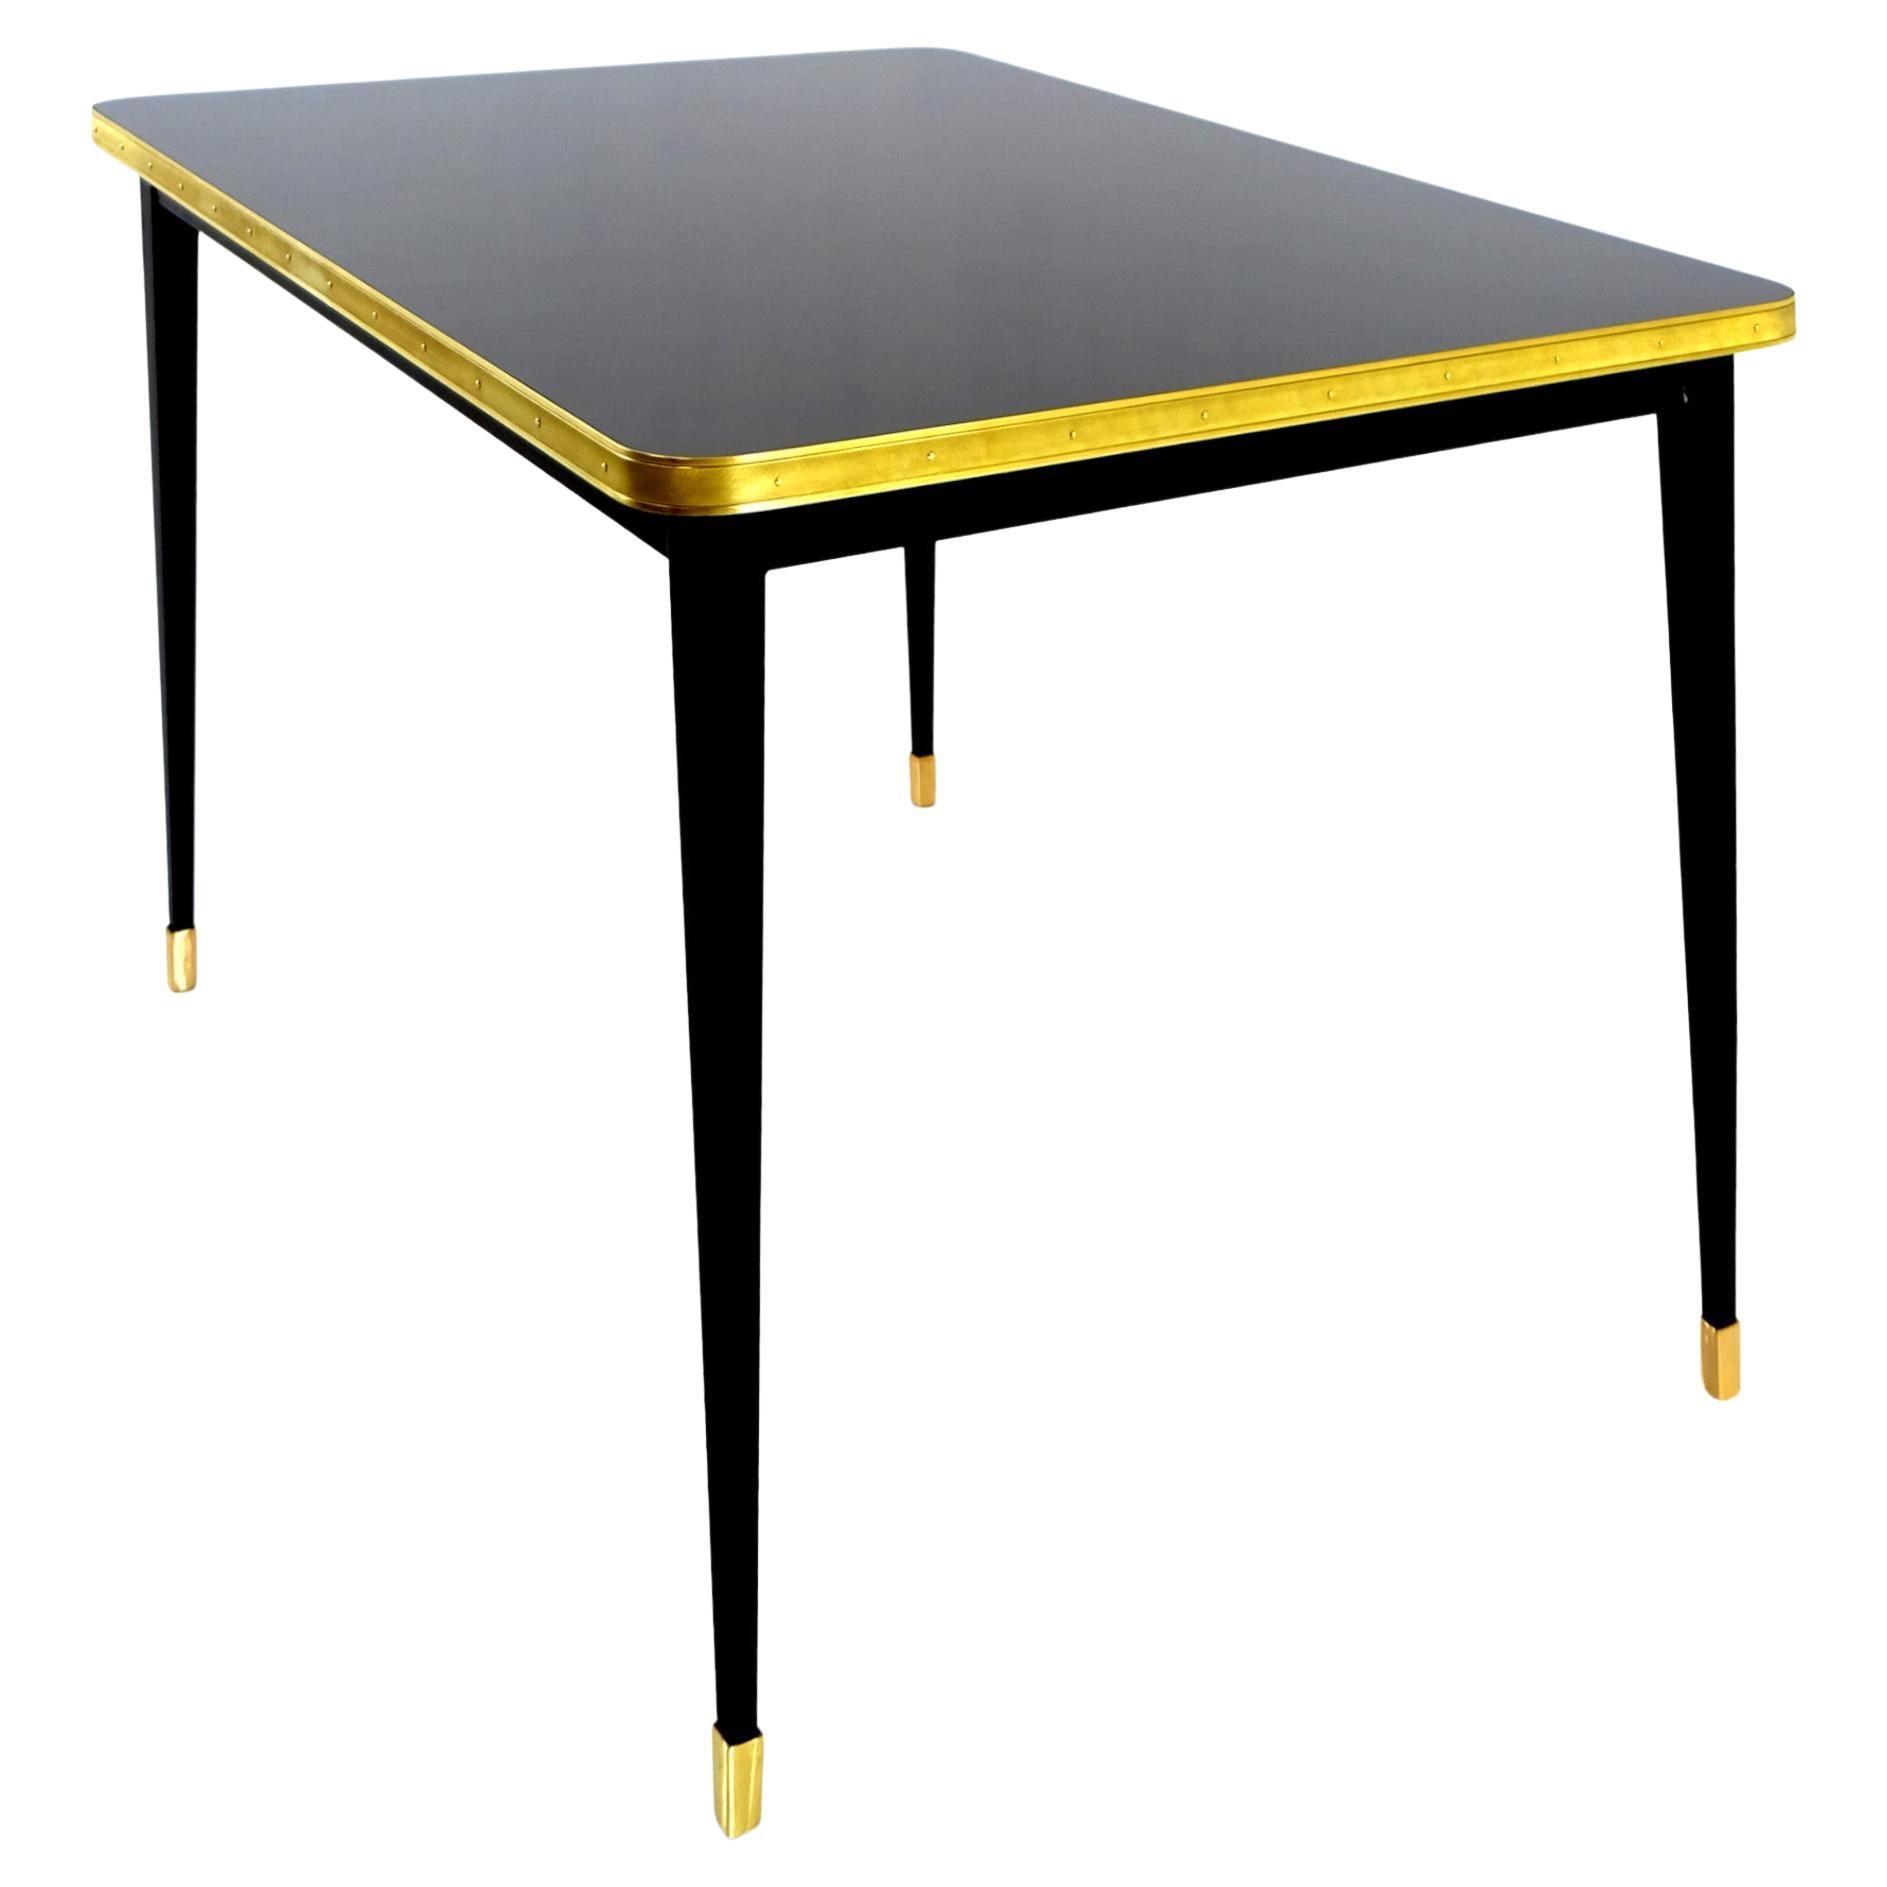 Julieta Collection'S. 

Tisch mit konischen Beinen aus schwarzem Stahl mit Messingboden Endtischplatte auf Hochglanzlaminat mit Messingbandrahmen

Wir stellen den atemberaubenden Esszimmertisch mit schwarz pulverbeschichteter Stahlkonstruktion vor,